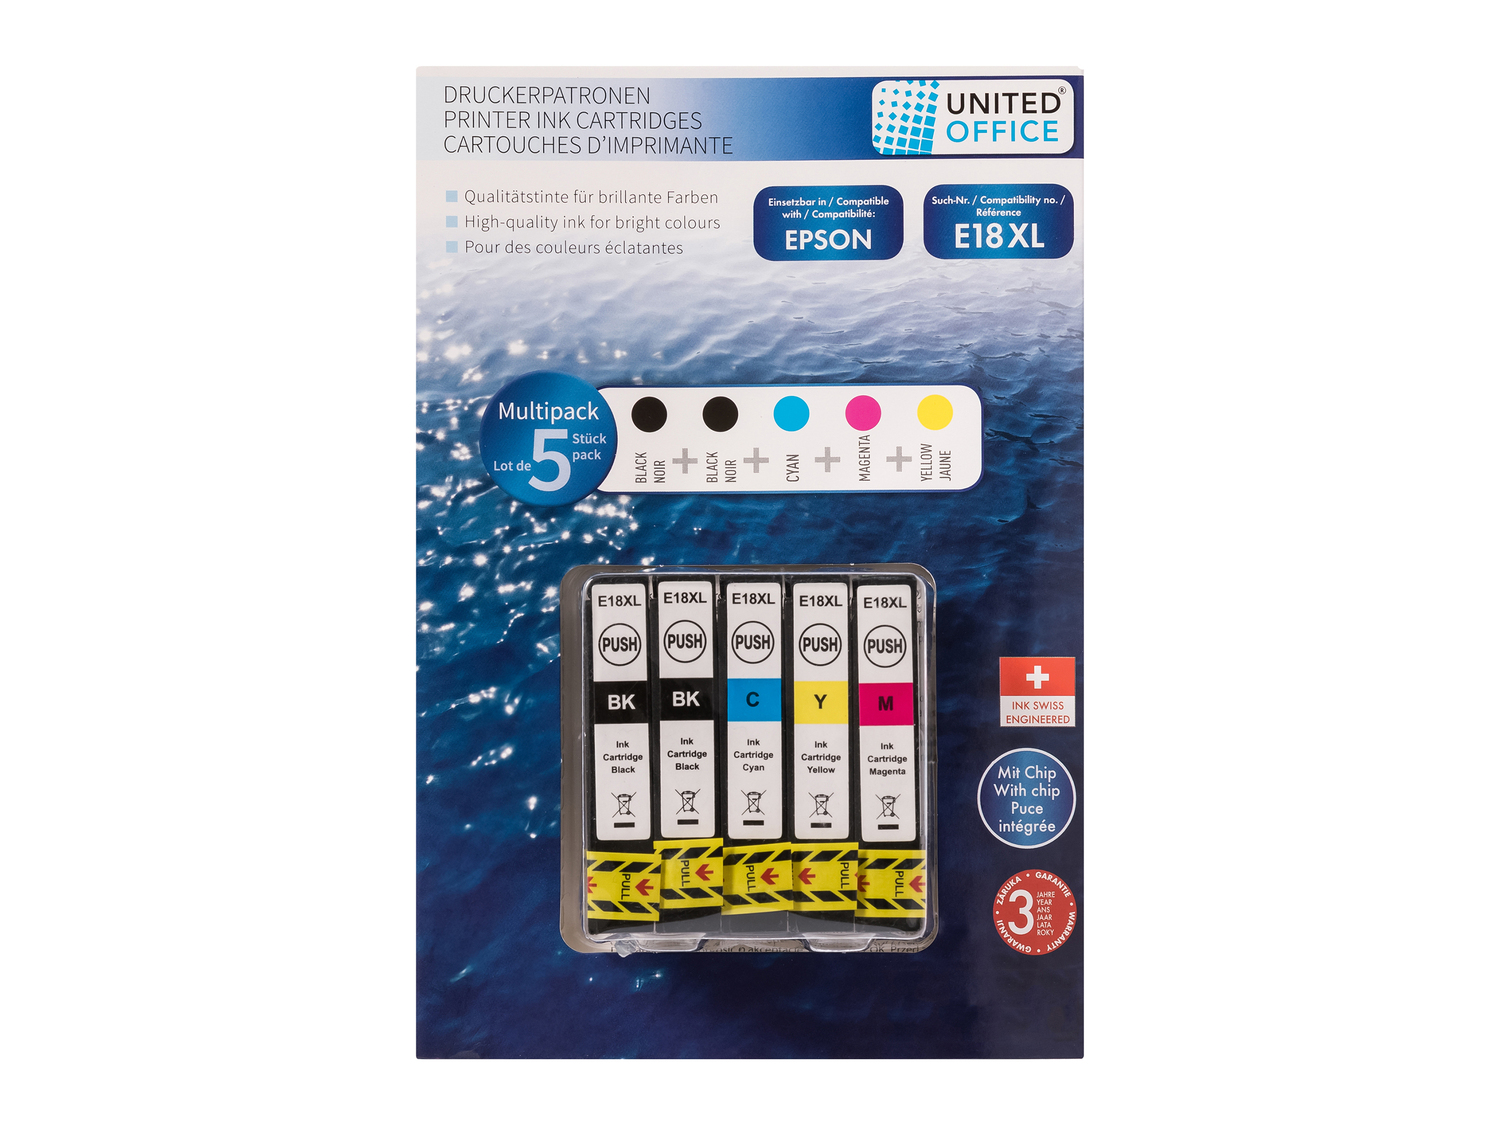 Cartucce Multipack per stampanti Epson United Office, prezzo 14.99 € 

Caratteristiche

- ...